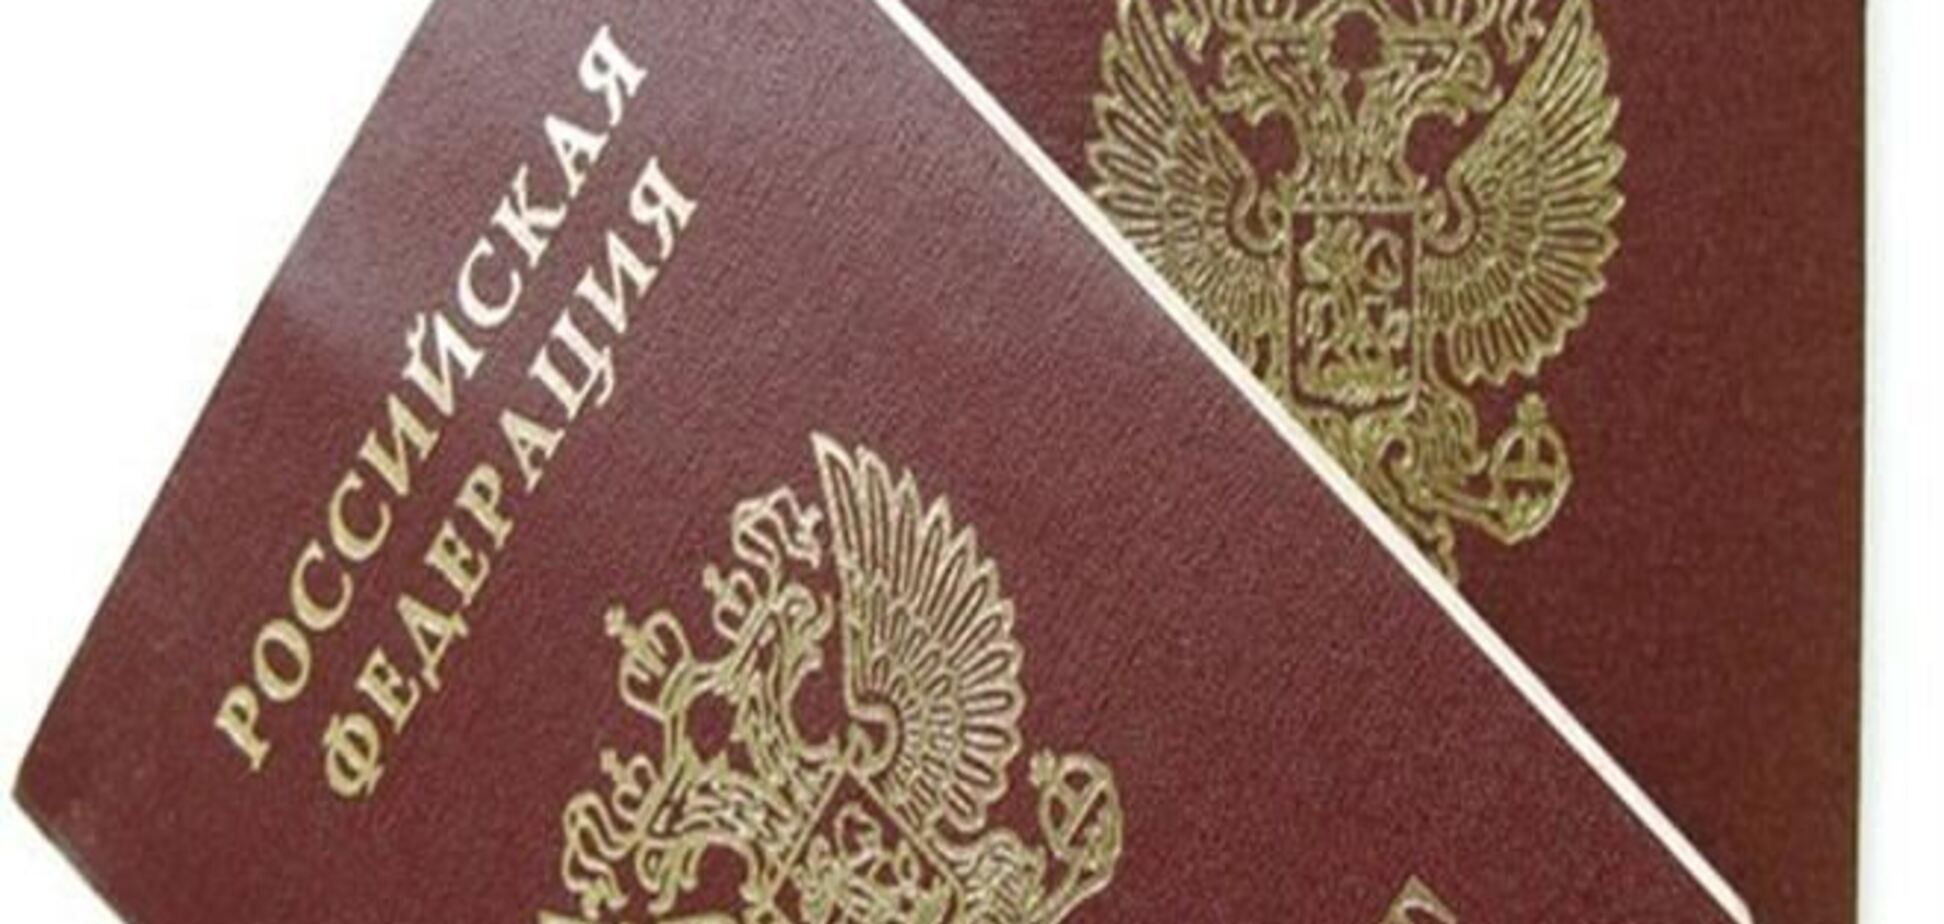 Российские власти сдерживают процесс отказа крымчан от российского гражданства